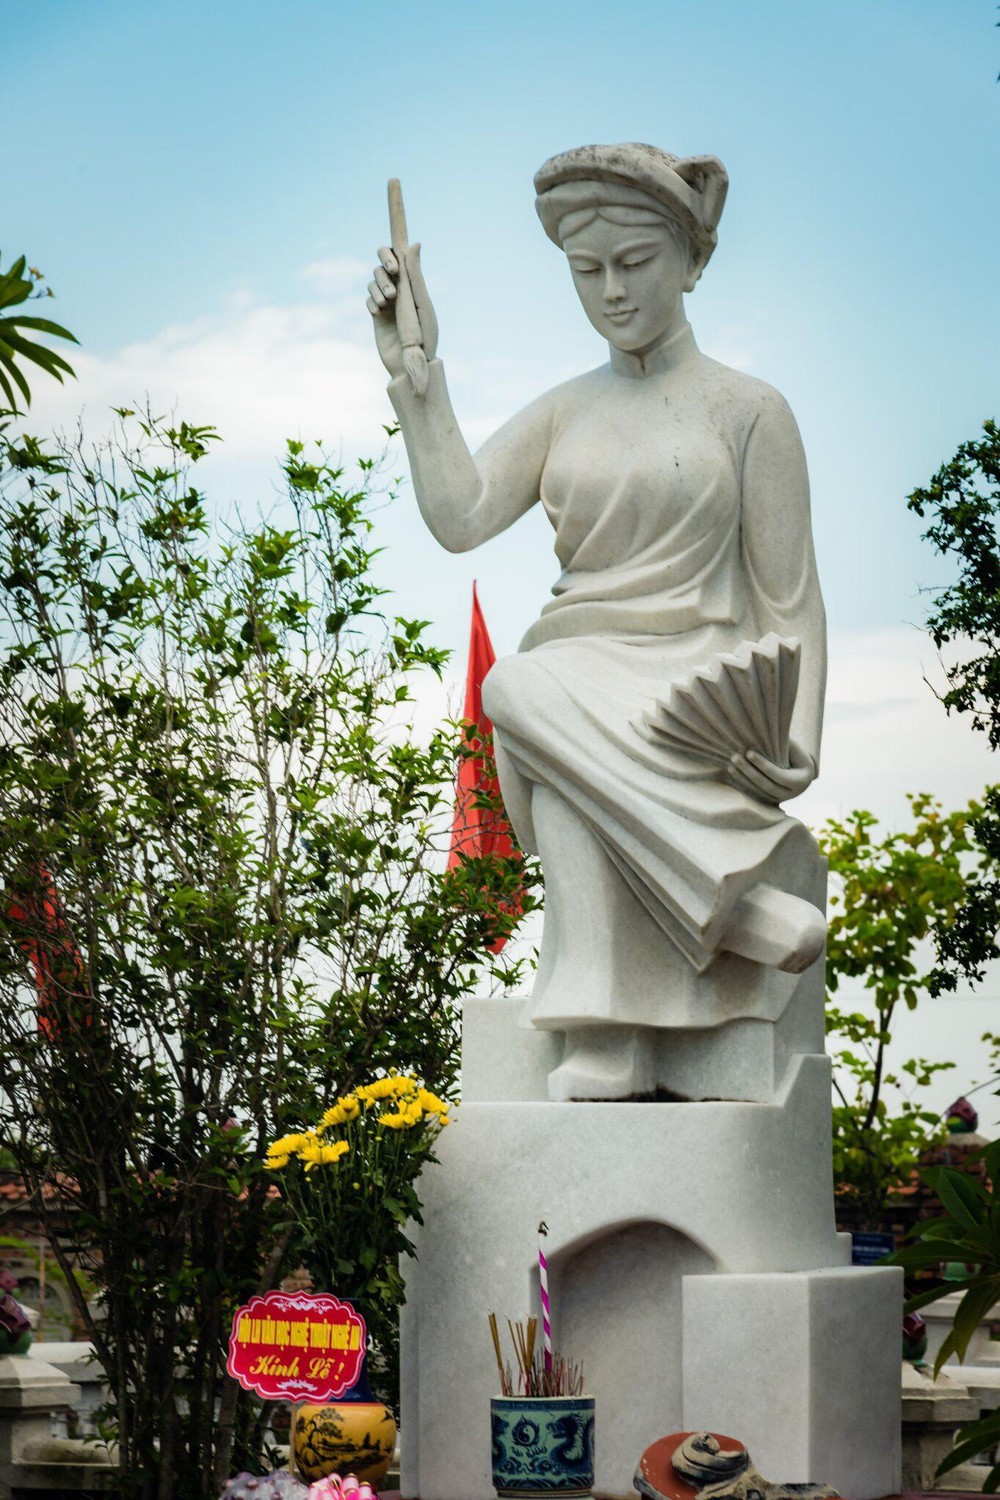 Tuong nu si Ho Xuan Huong tai lang Quynh - Ngôi làng địa linh nhân kiệt - quê hương Bà Chúa thơ Nôm Hồ Xuân Hương